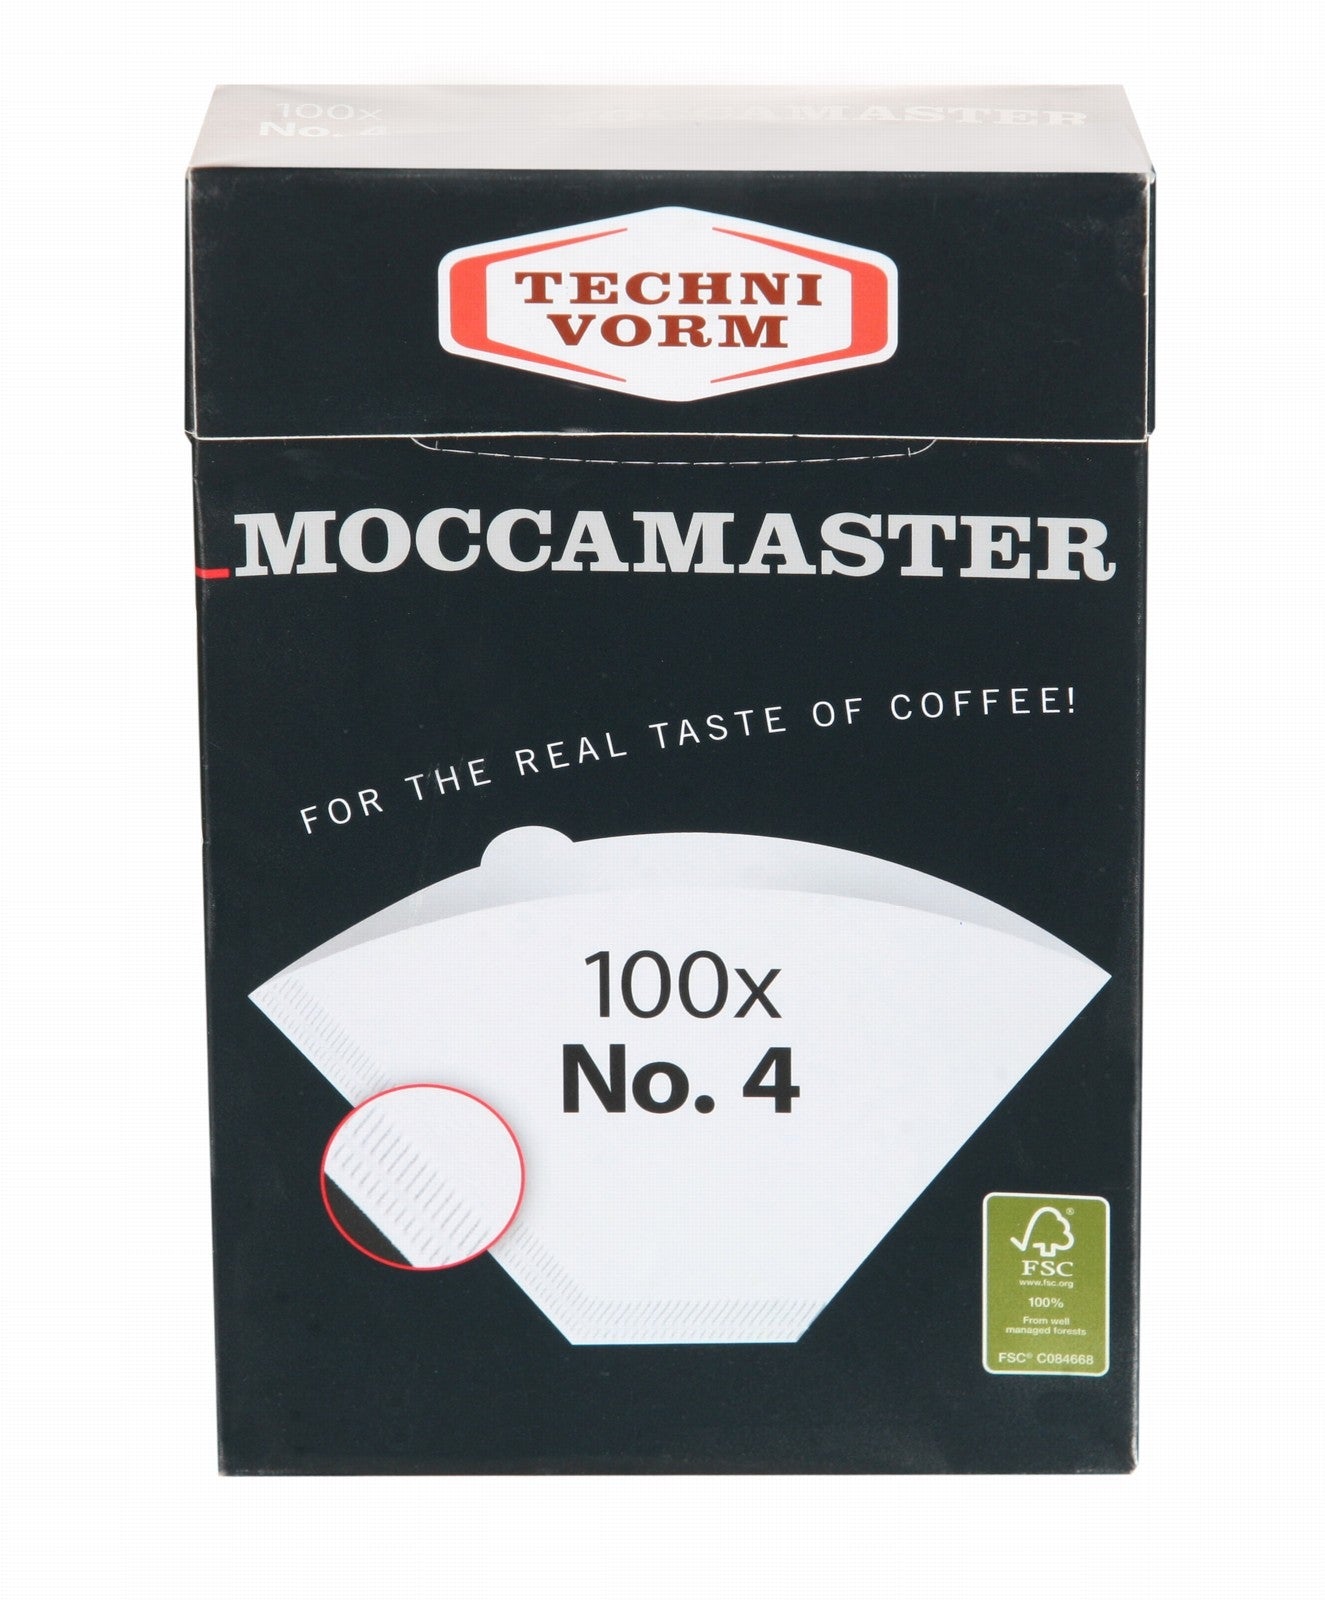 Moccamaster Kaffeefilter weiß Nr. 4 commercial Technivorm BV 